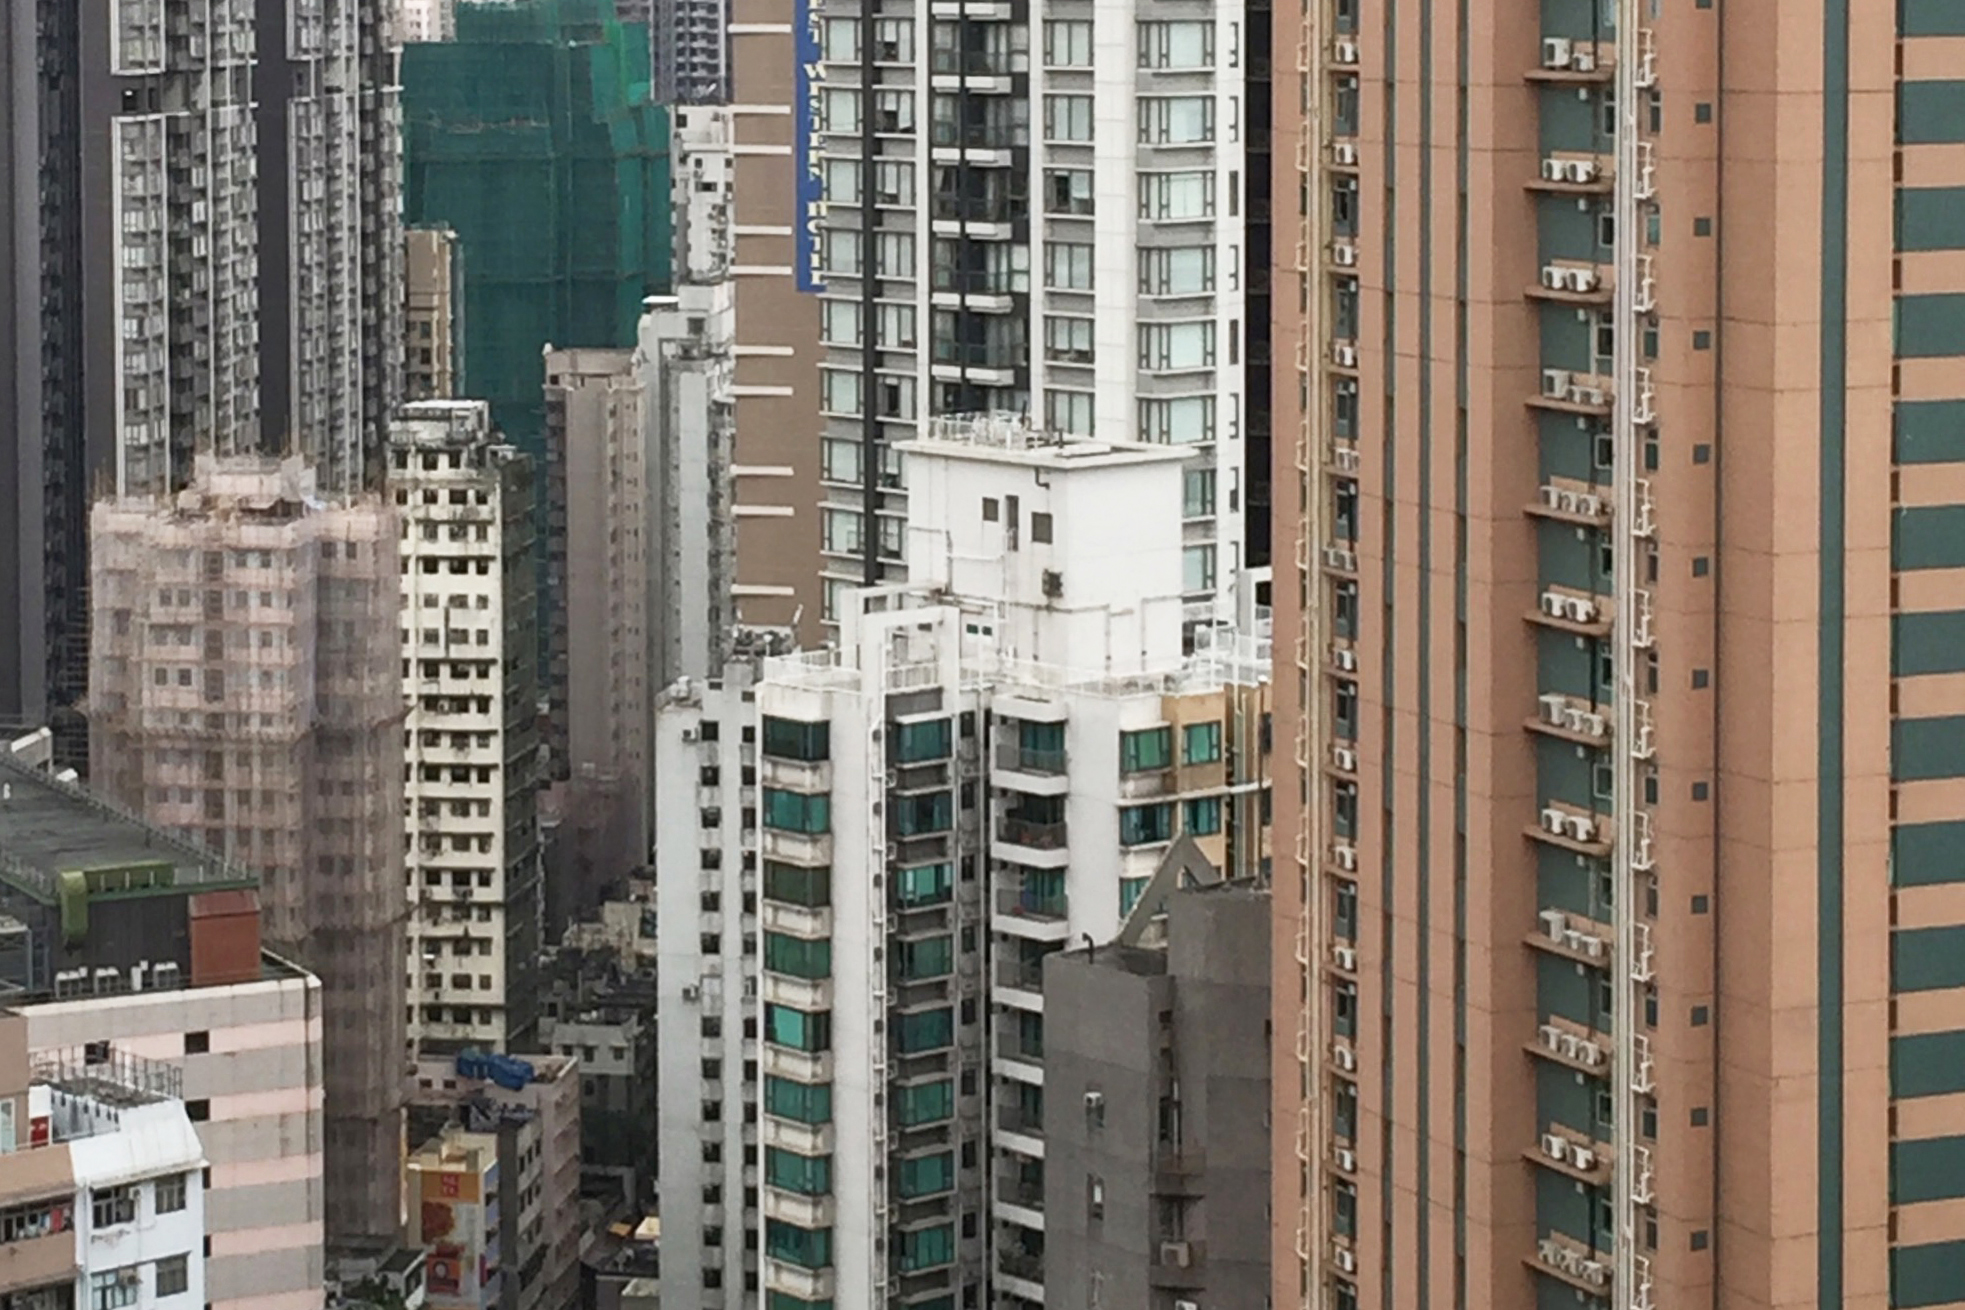 Layover in Central Hong Kong | Hong Kong, China